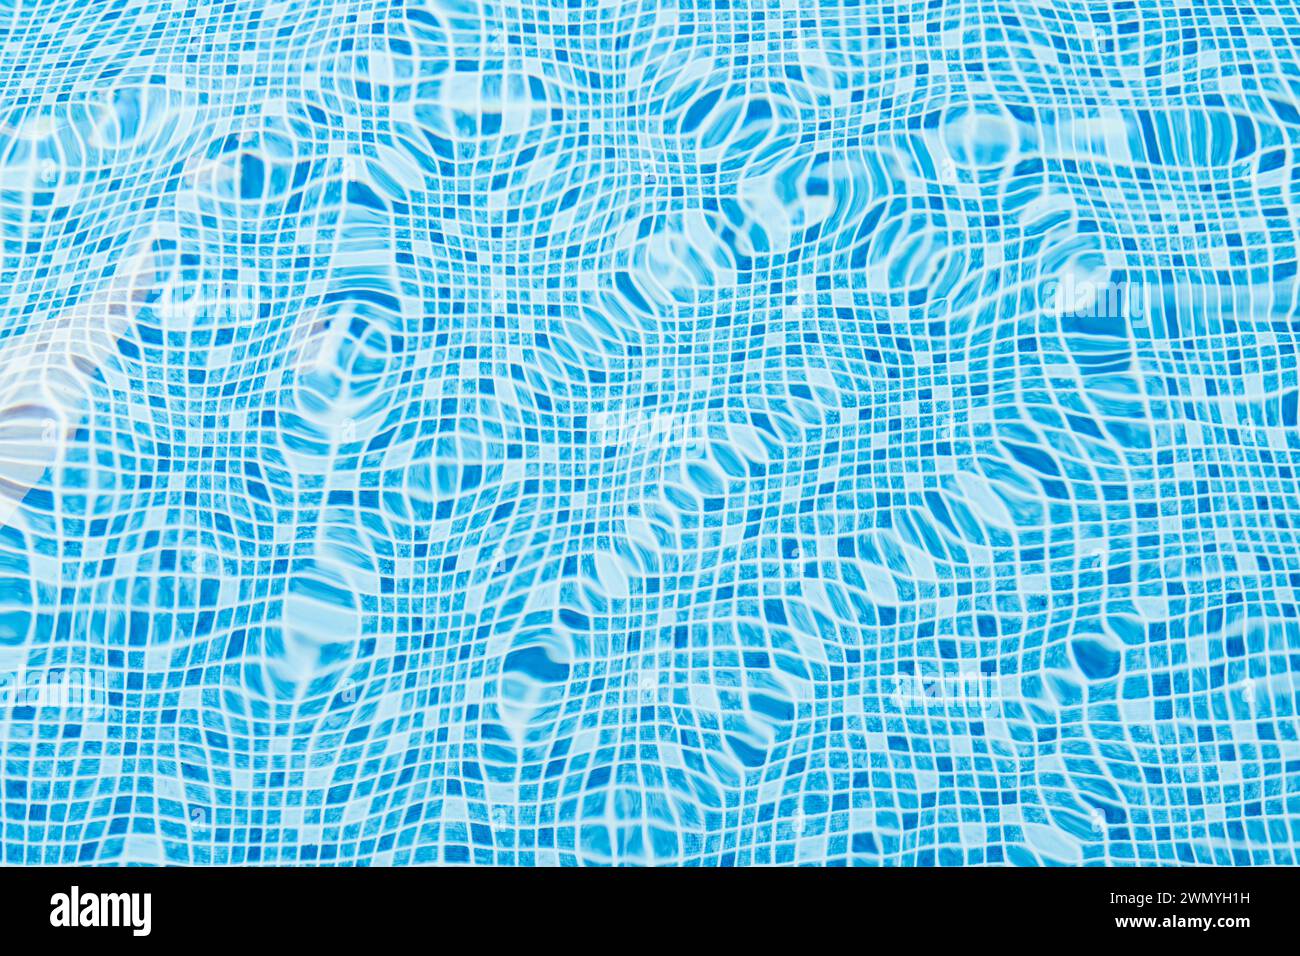 Un primo piano di luce che si riflette sulla superficie ondulata dell'acqua in una piscina fiancheggiata da piastrelle blu brillante Foto Stock